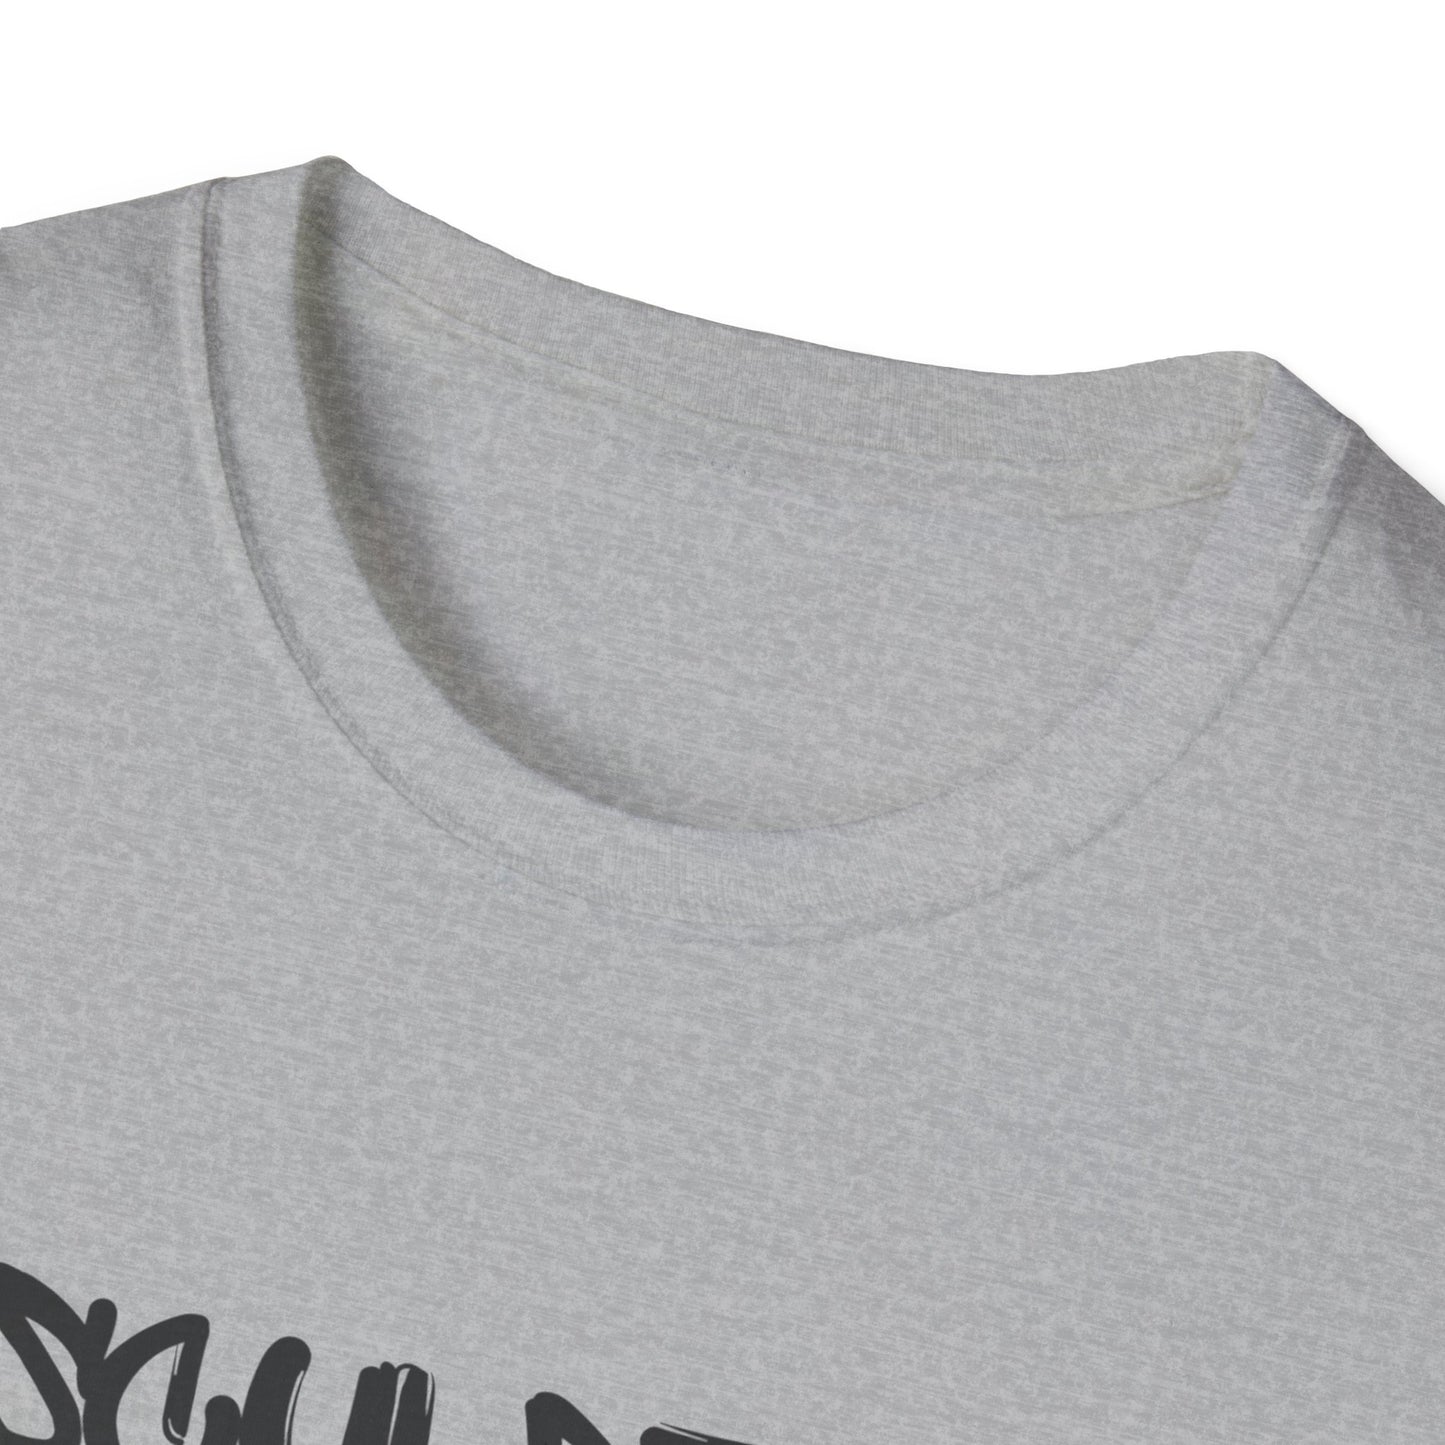 Sculpt It, Tone It, Own It | Unisex Softstyle T-Shirt